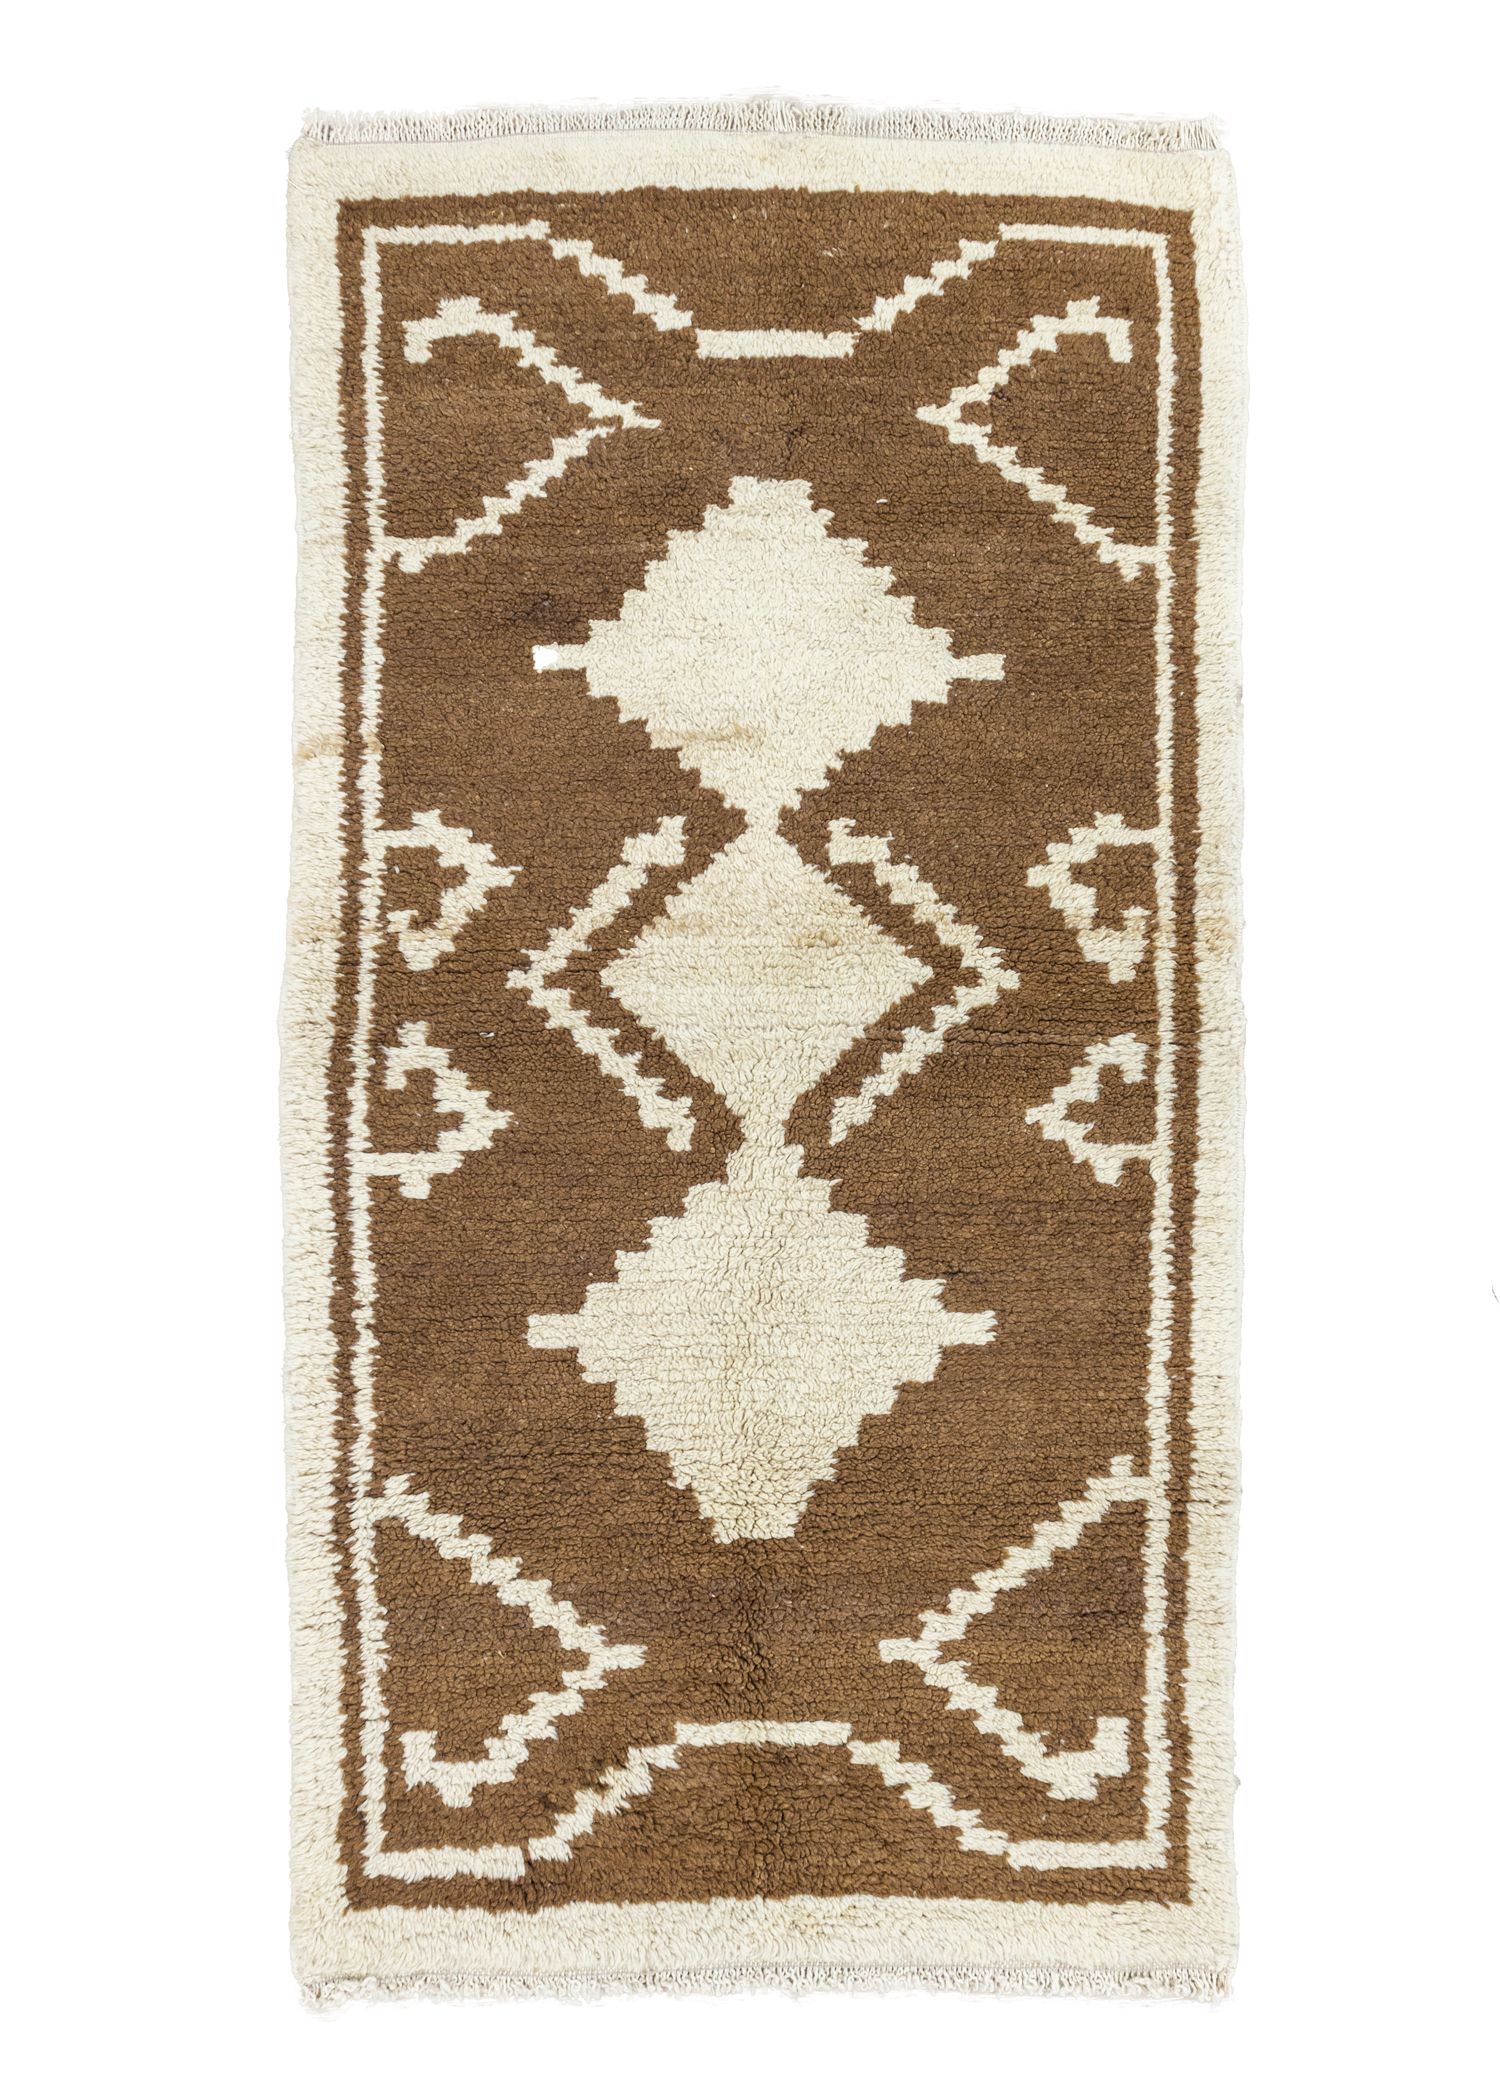 Defne Hand Woven Primitive Patterned Vintage Wool Rug 81x157 cm